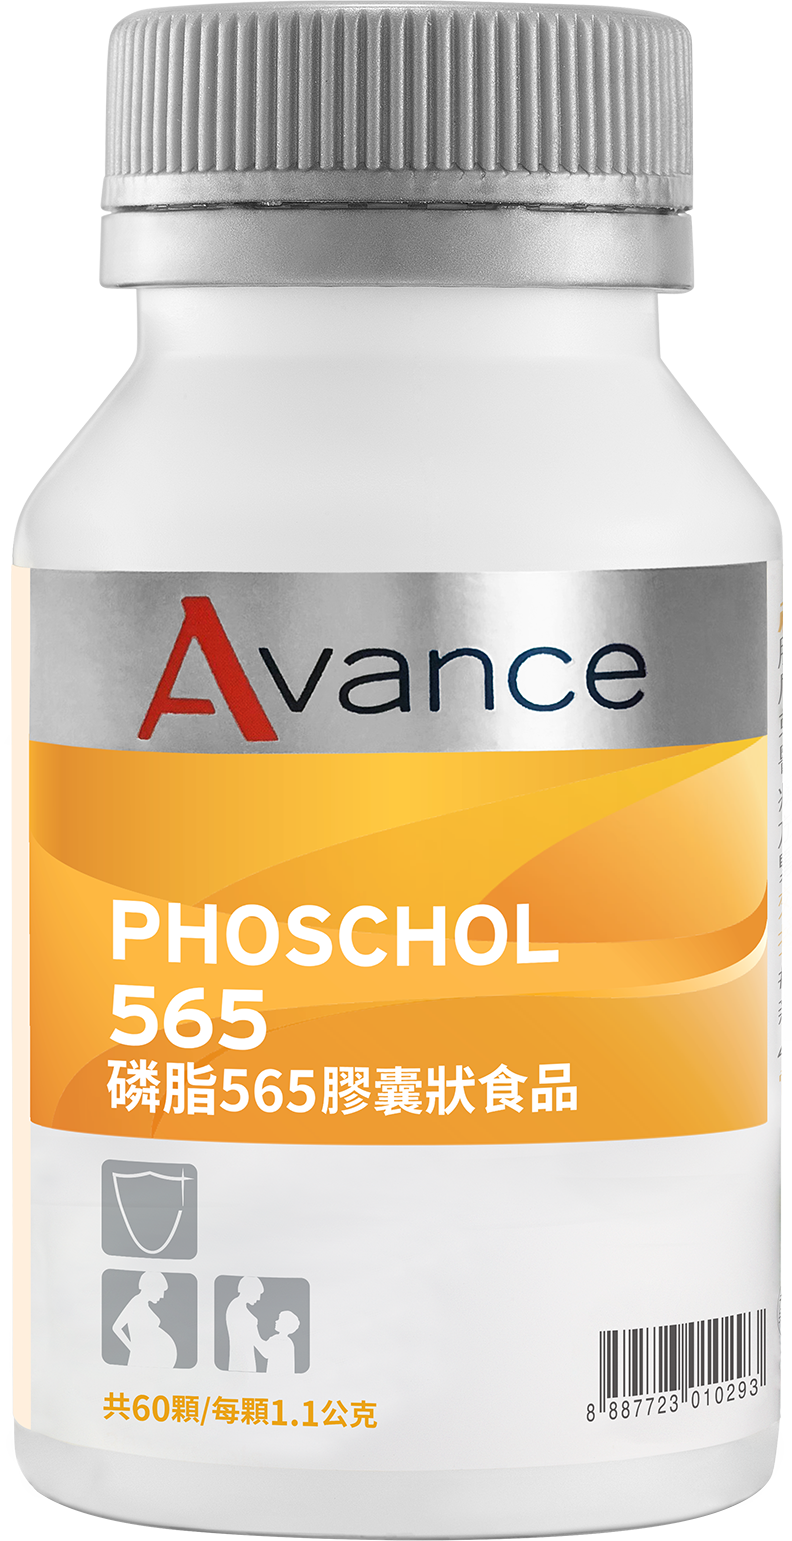 PhosChol 565